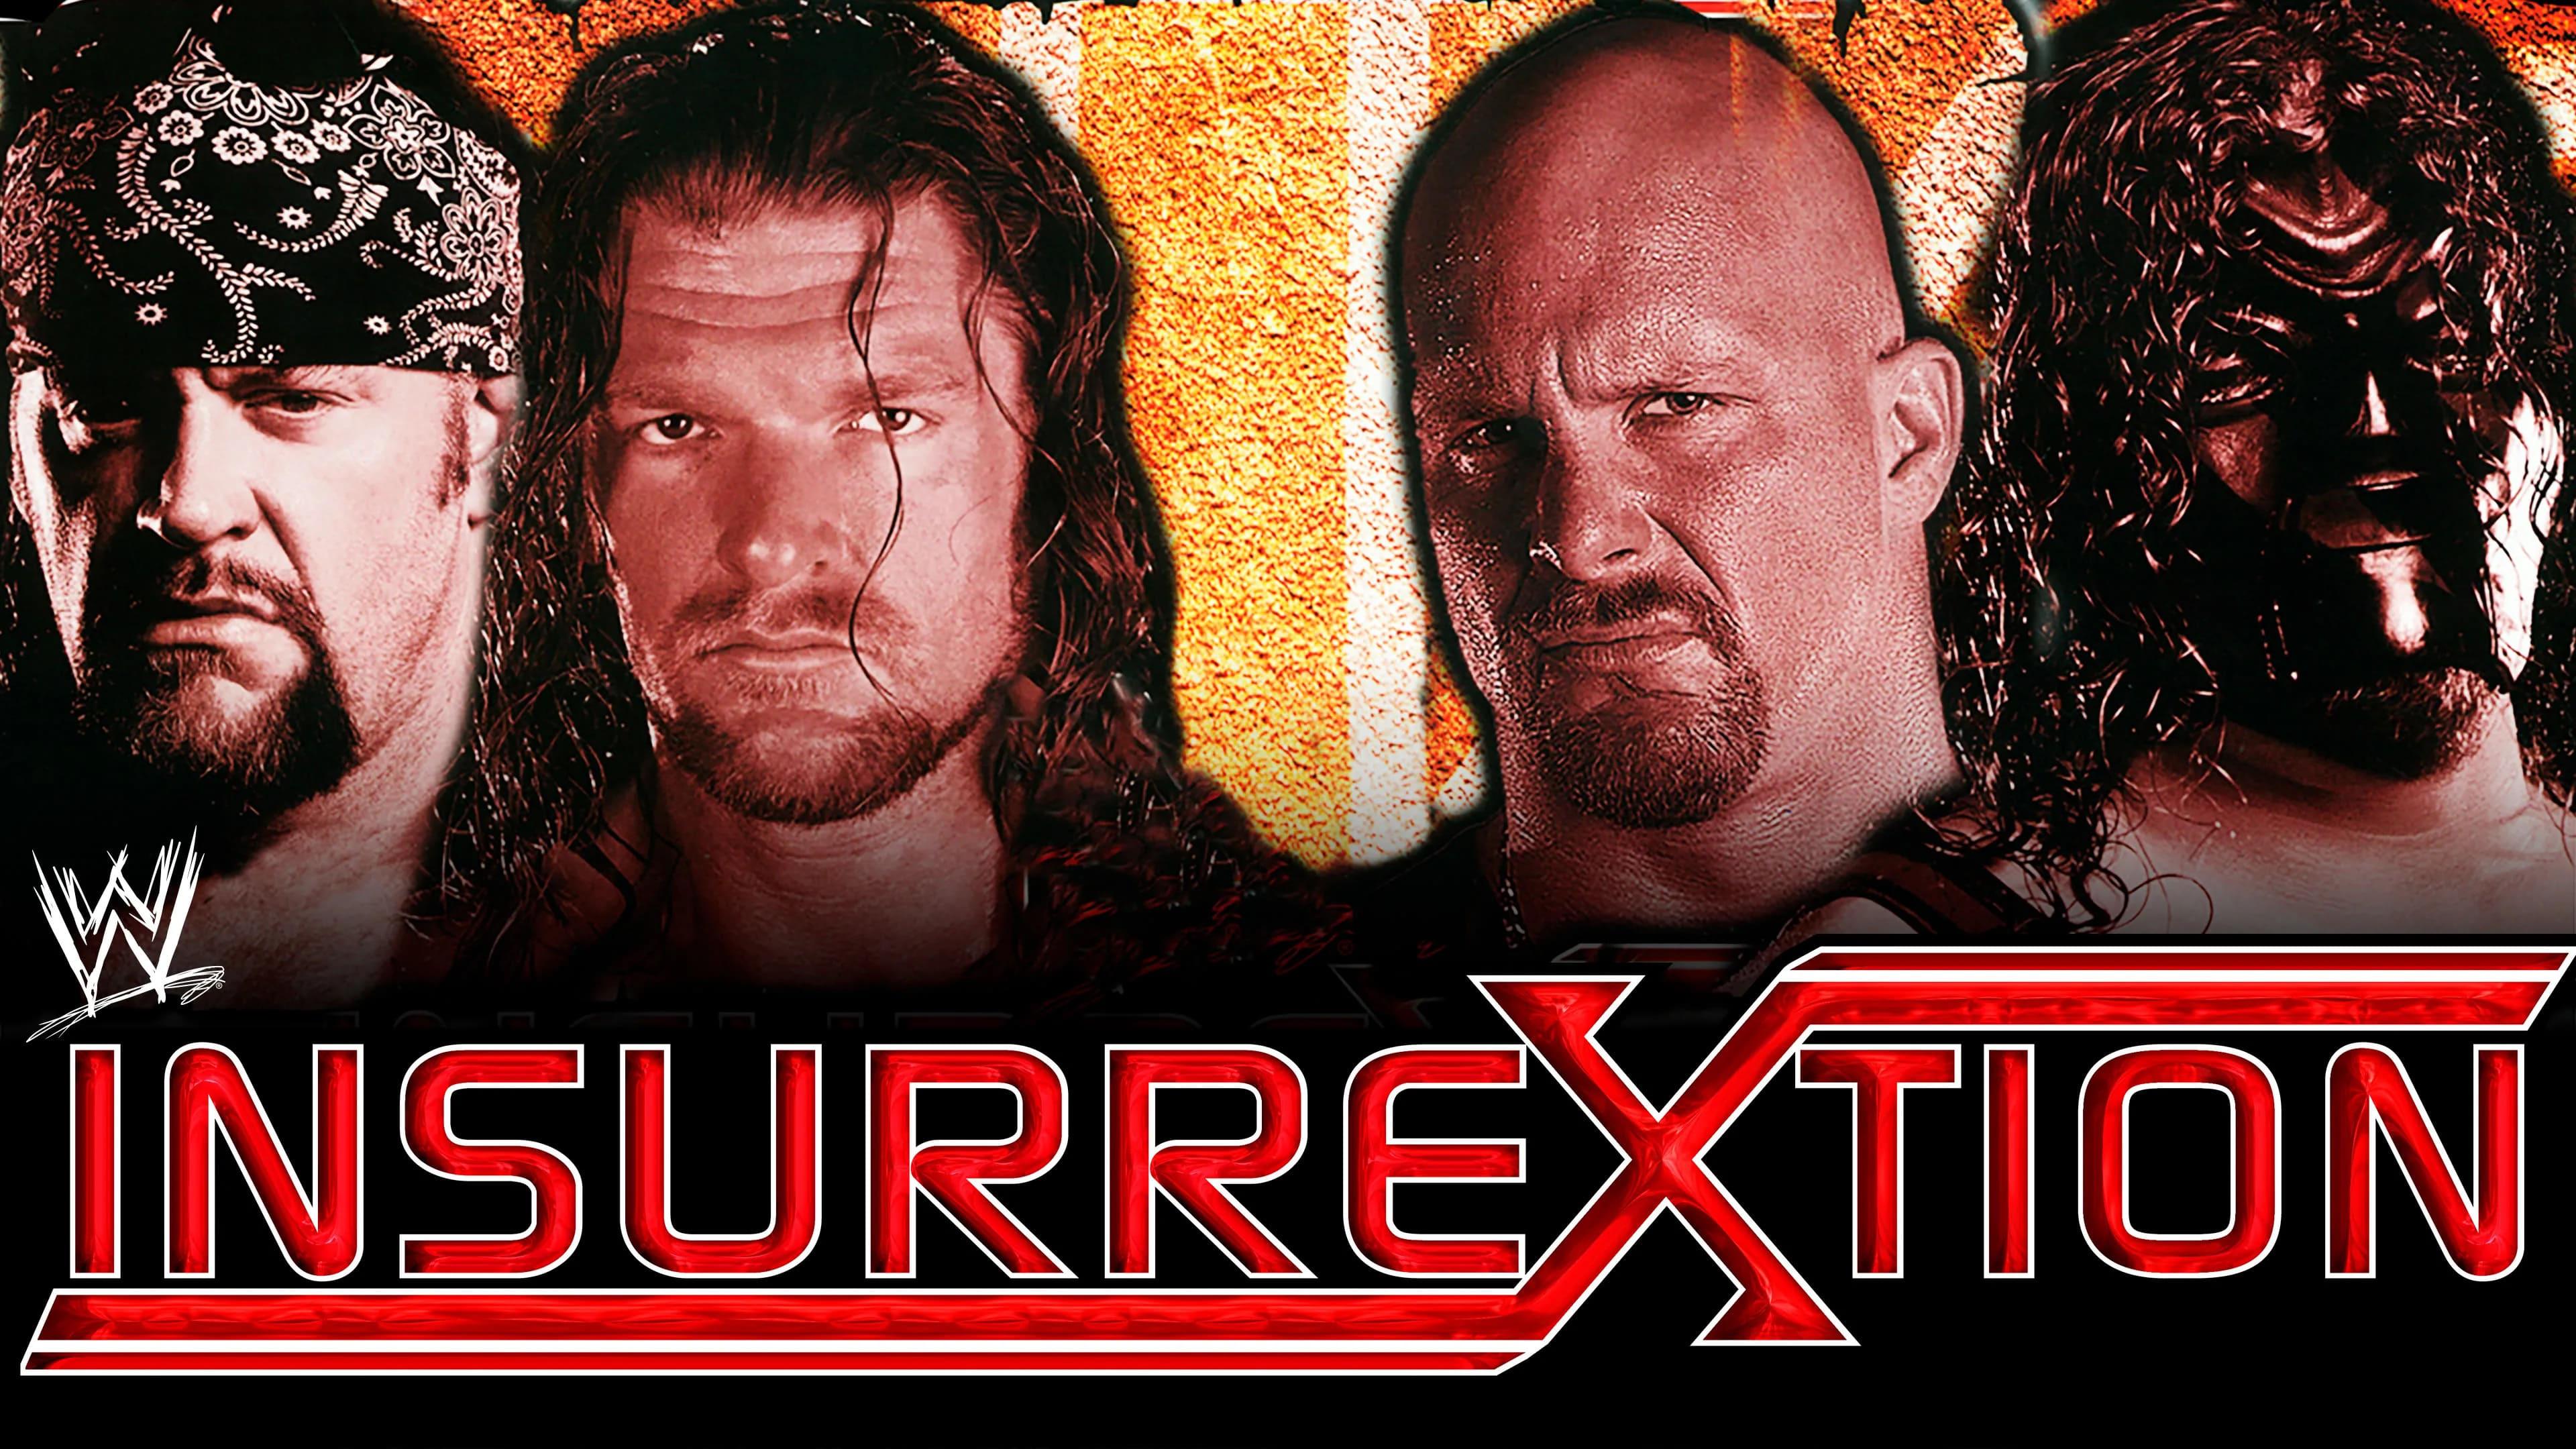 WWE Insurrextion 2001 backdrop